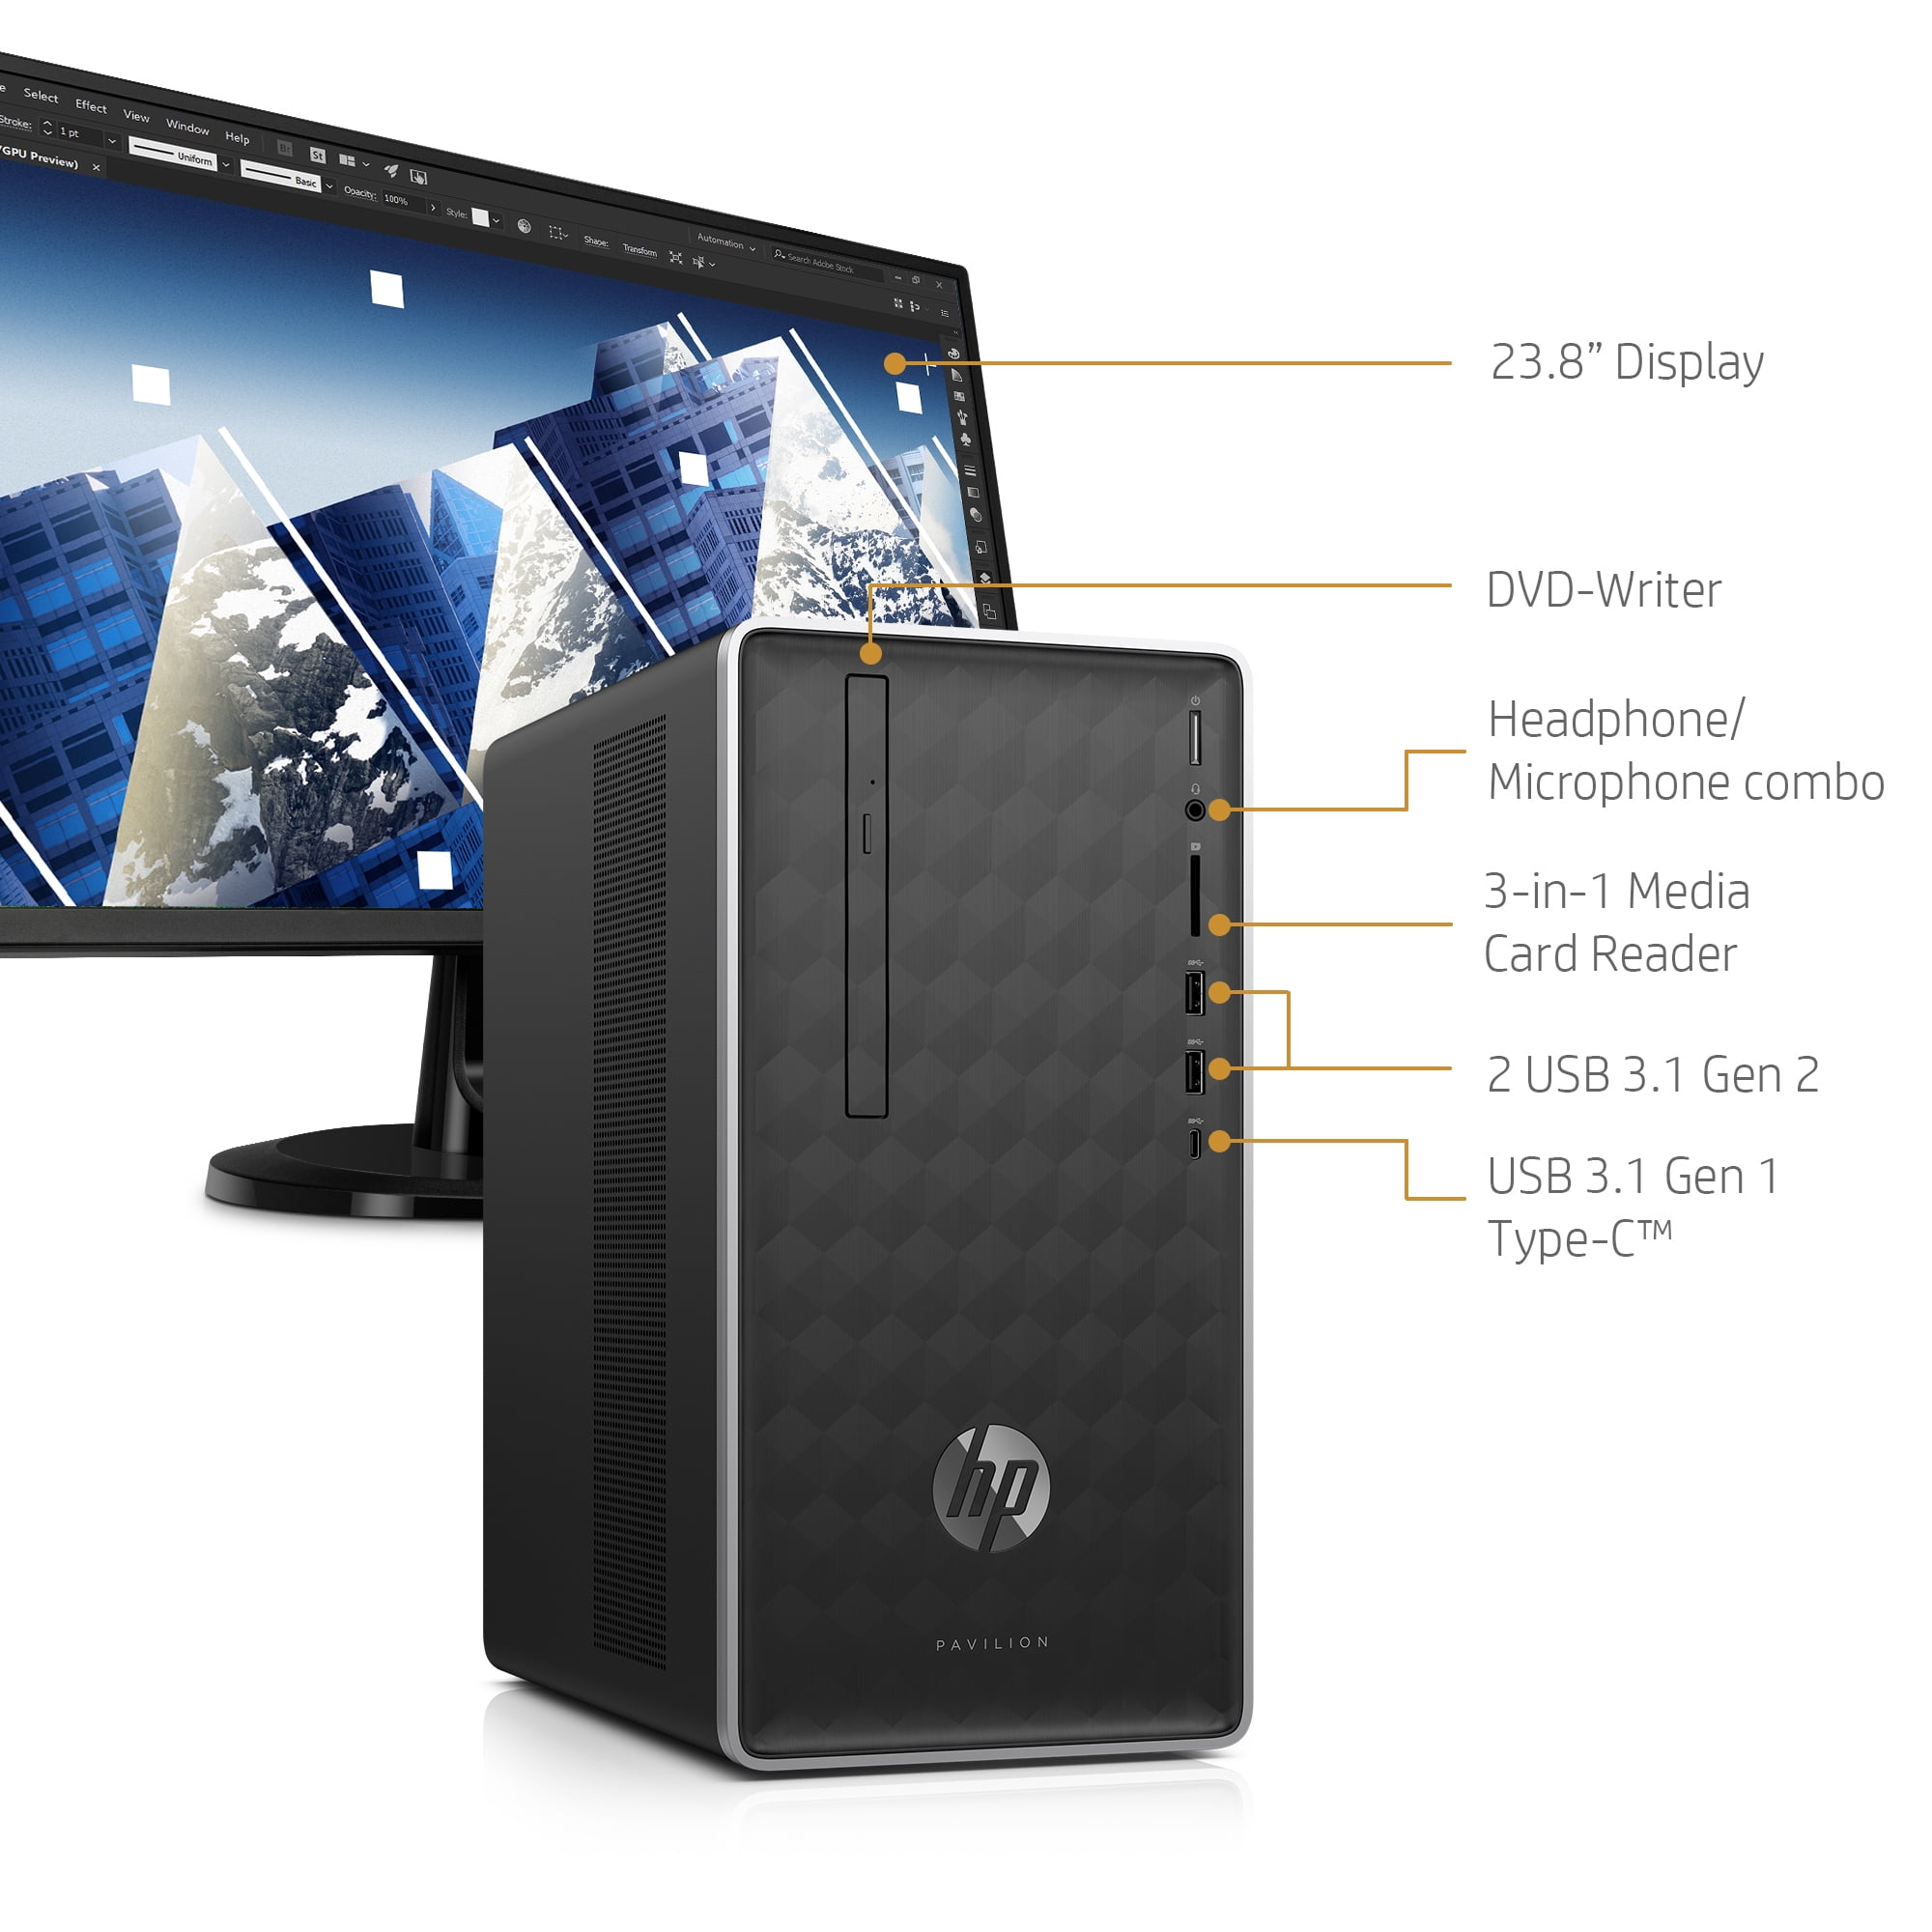 HP Desktop and 23.8